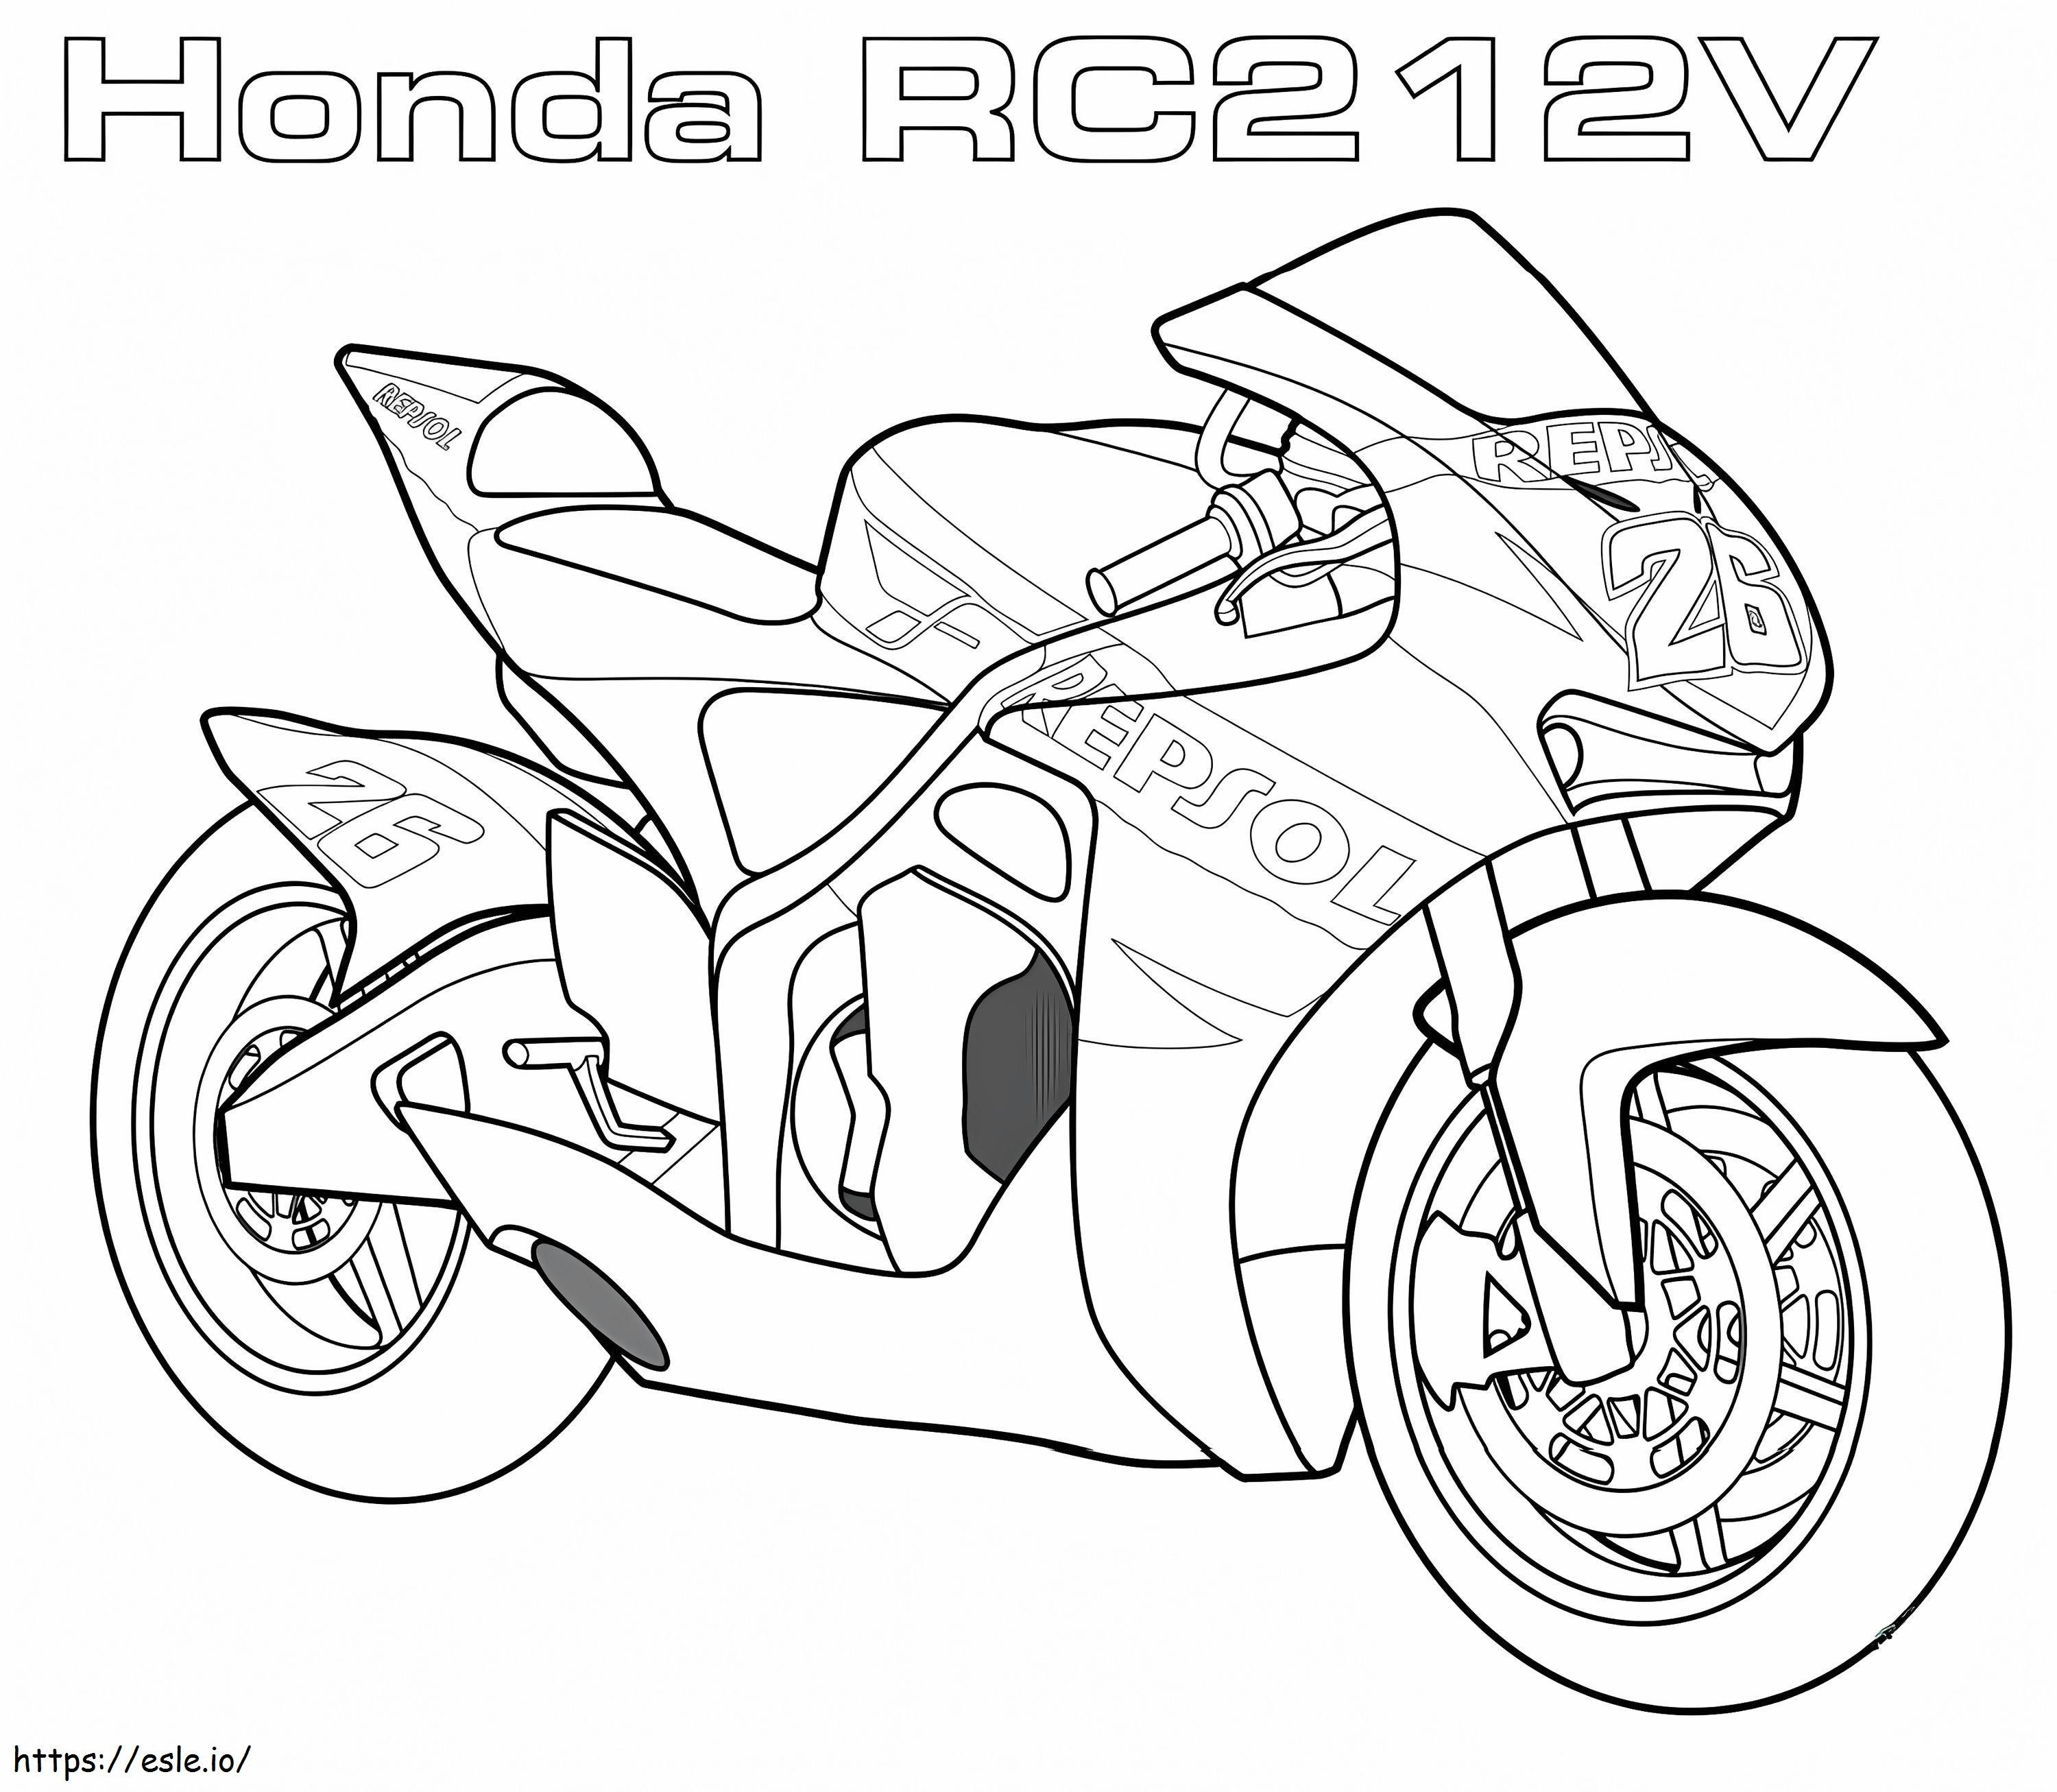 1560590239 Honda Rc2 V12 A4 ausmalbilder